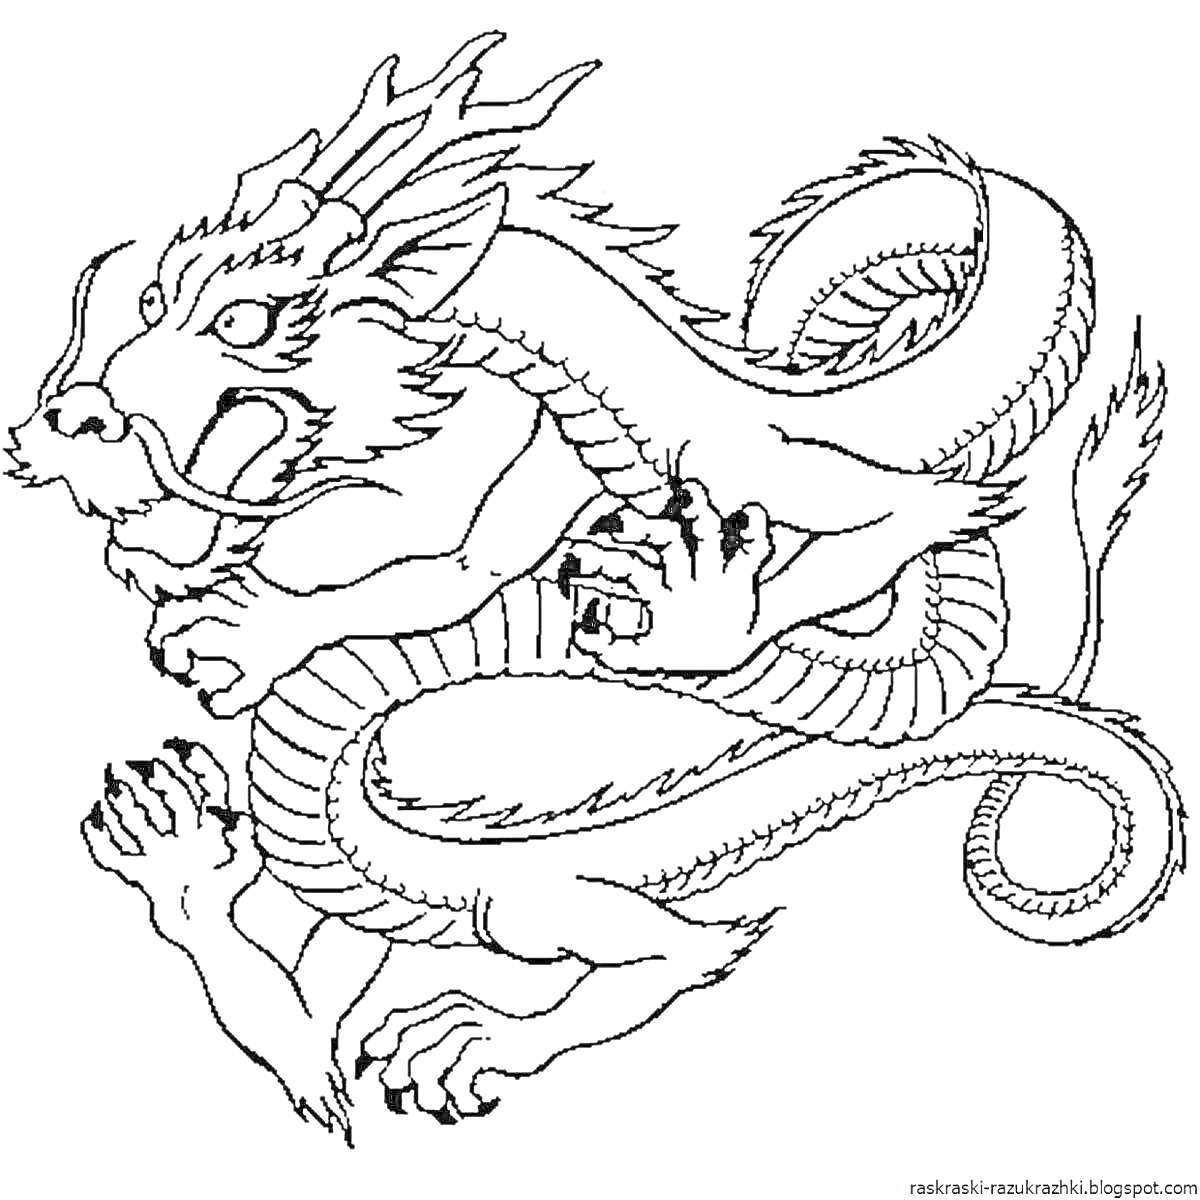 Китайский дракон с рогами и когтями, с завитым хвостом